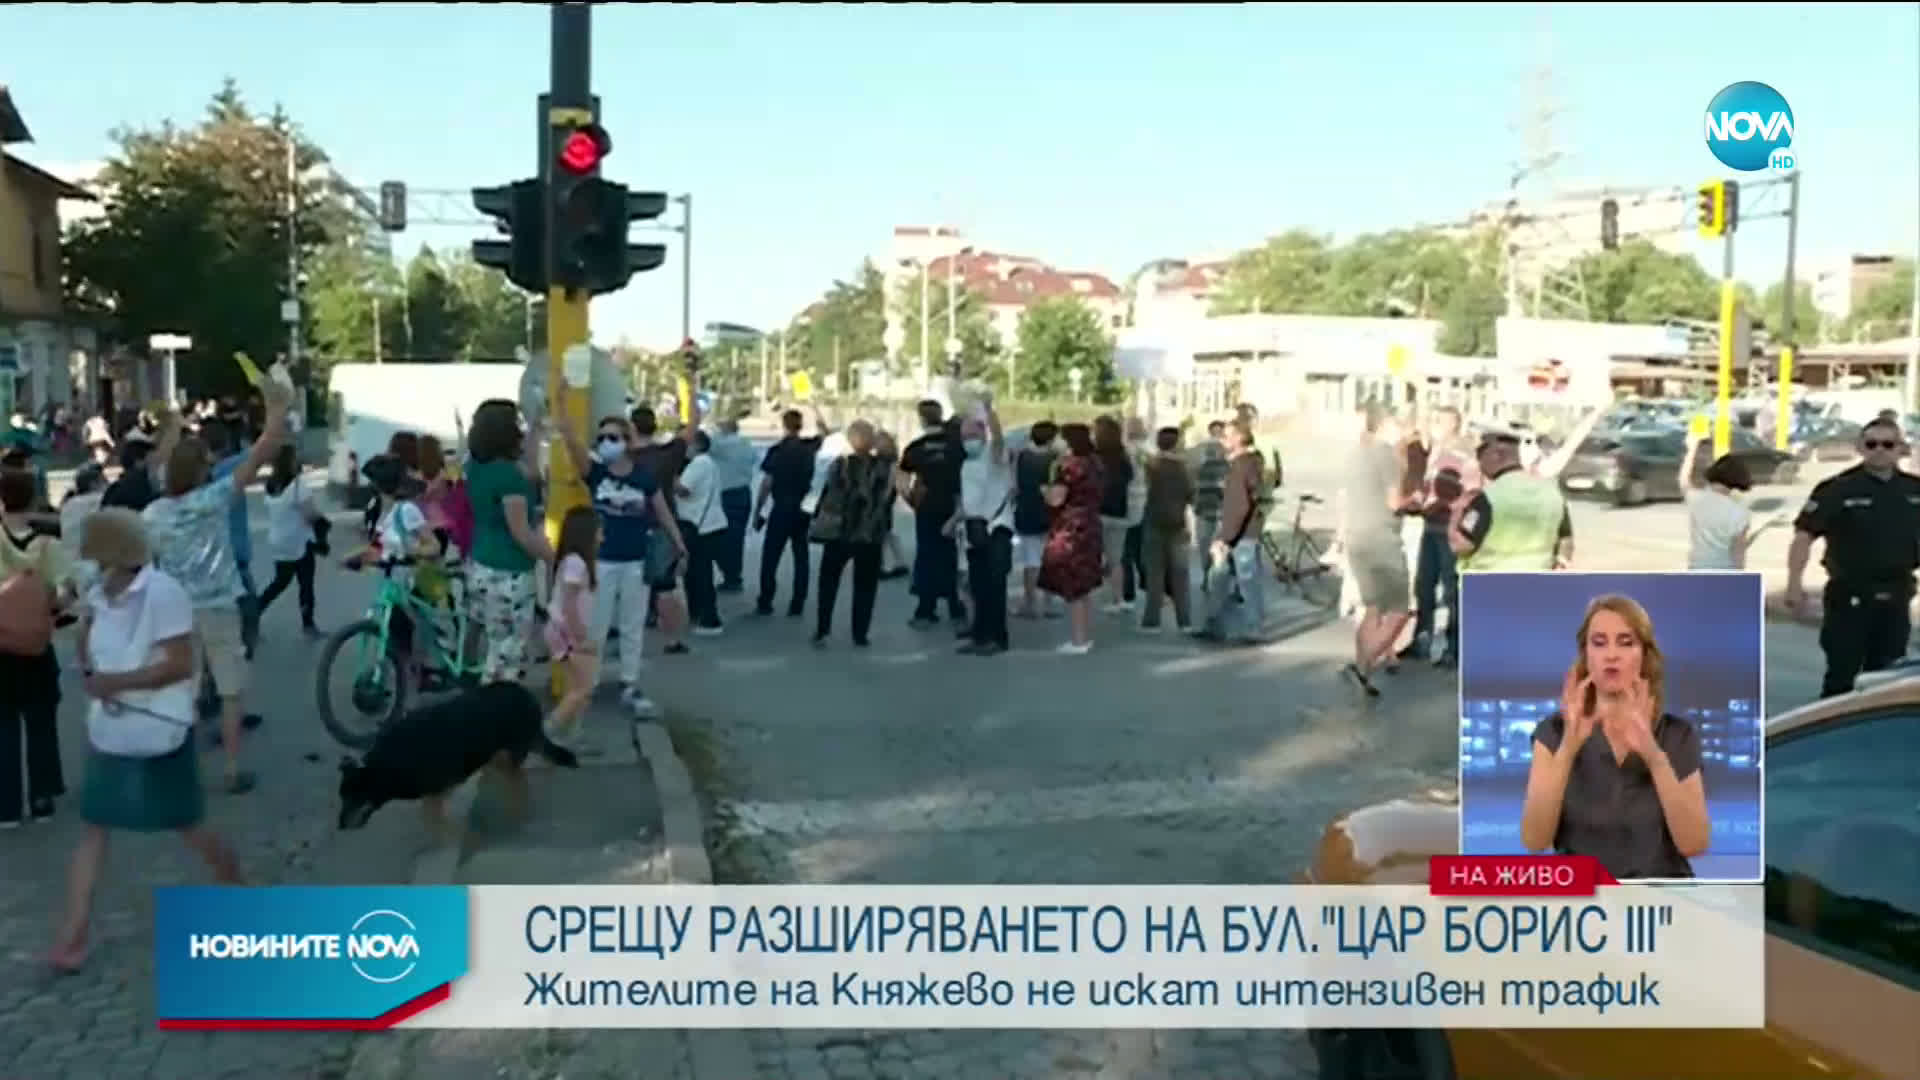 Жители на София на протест срещу разширяването на бул. "Цар Борис III"